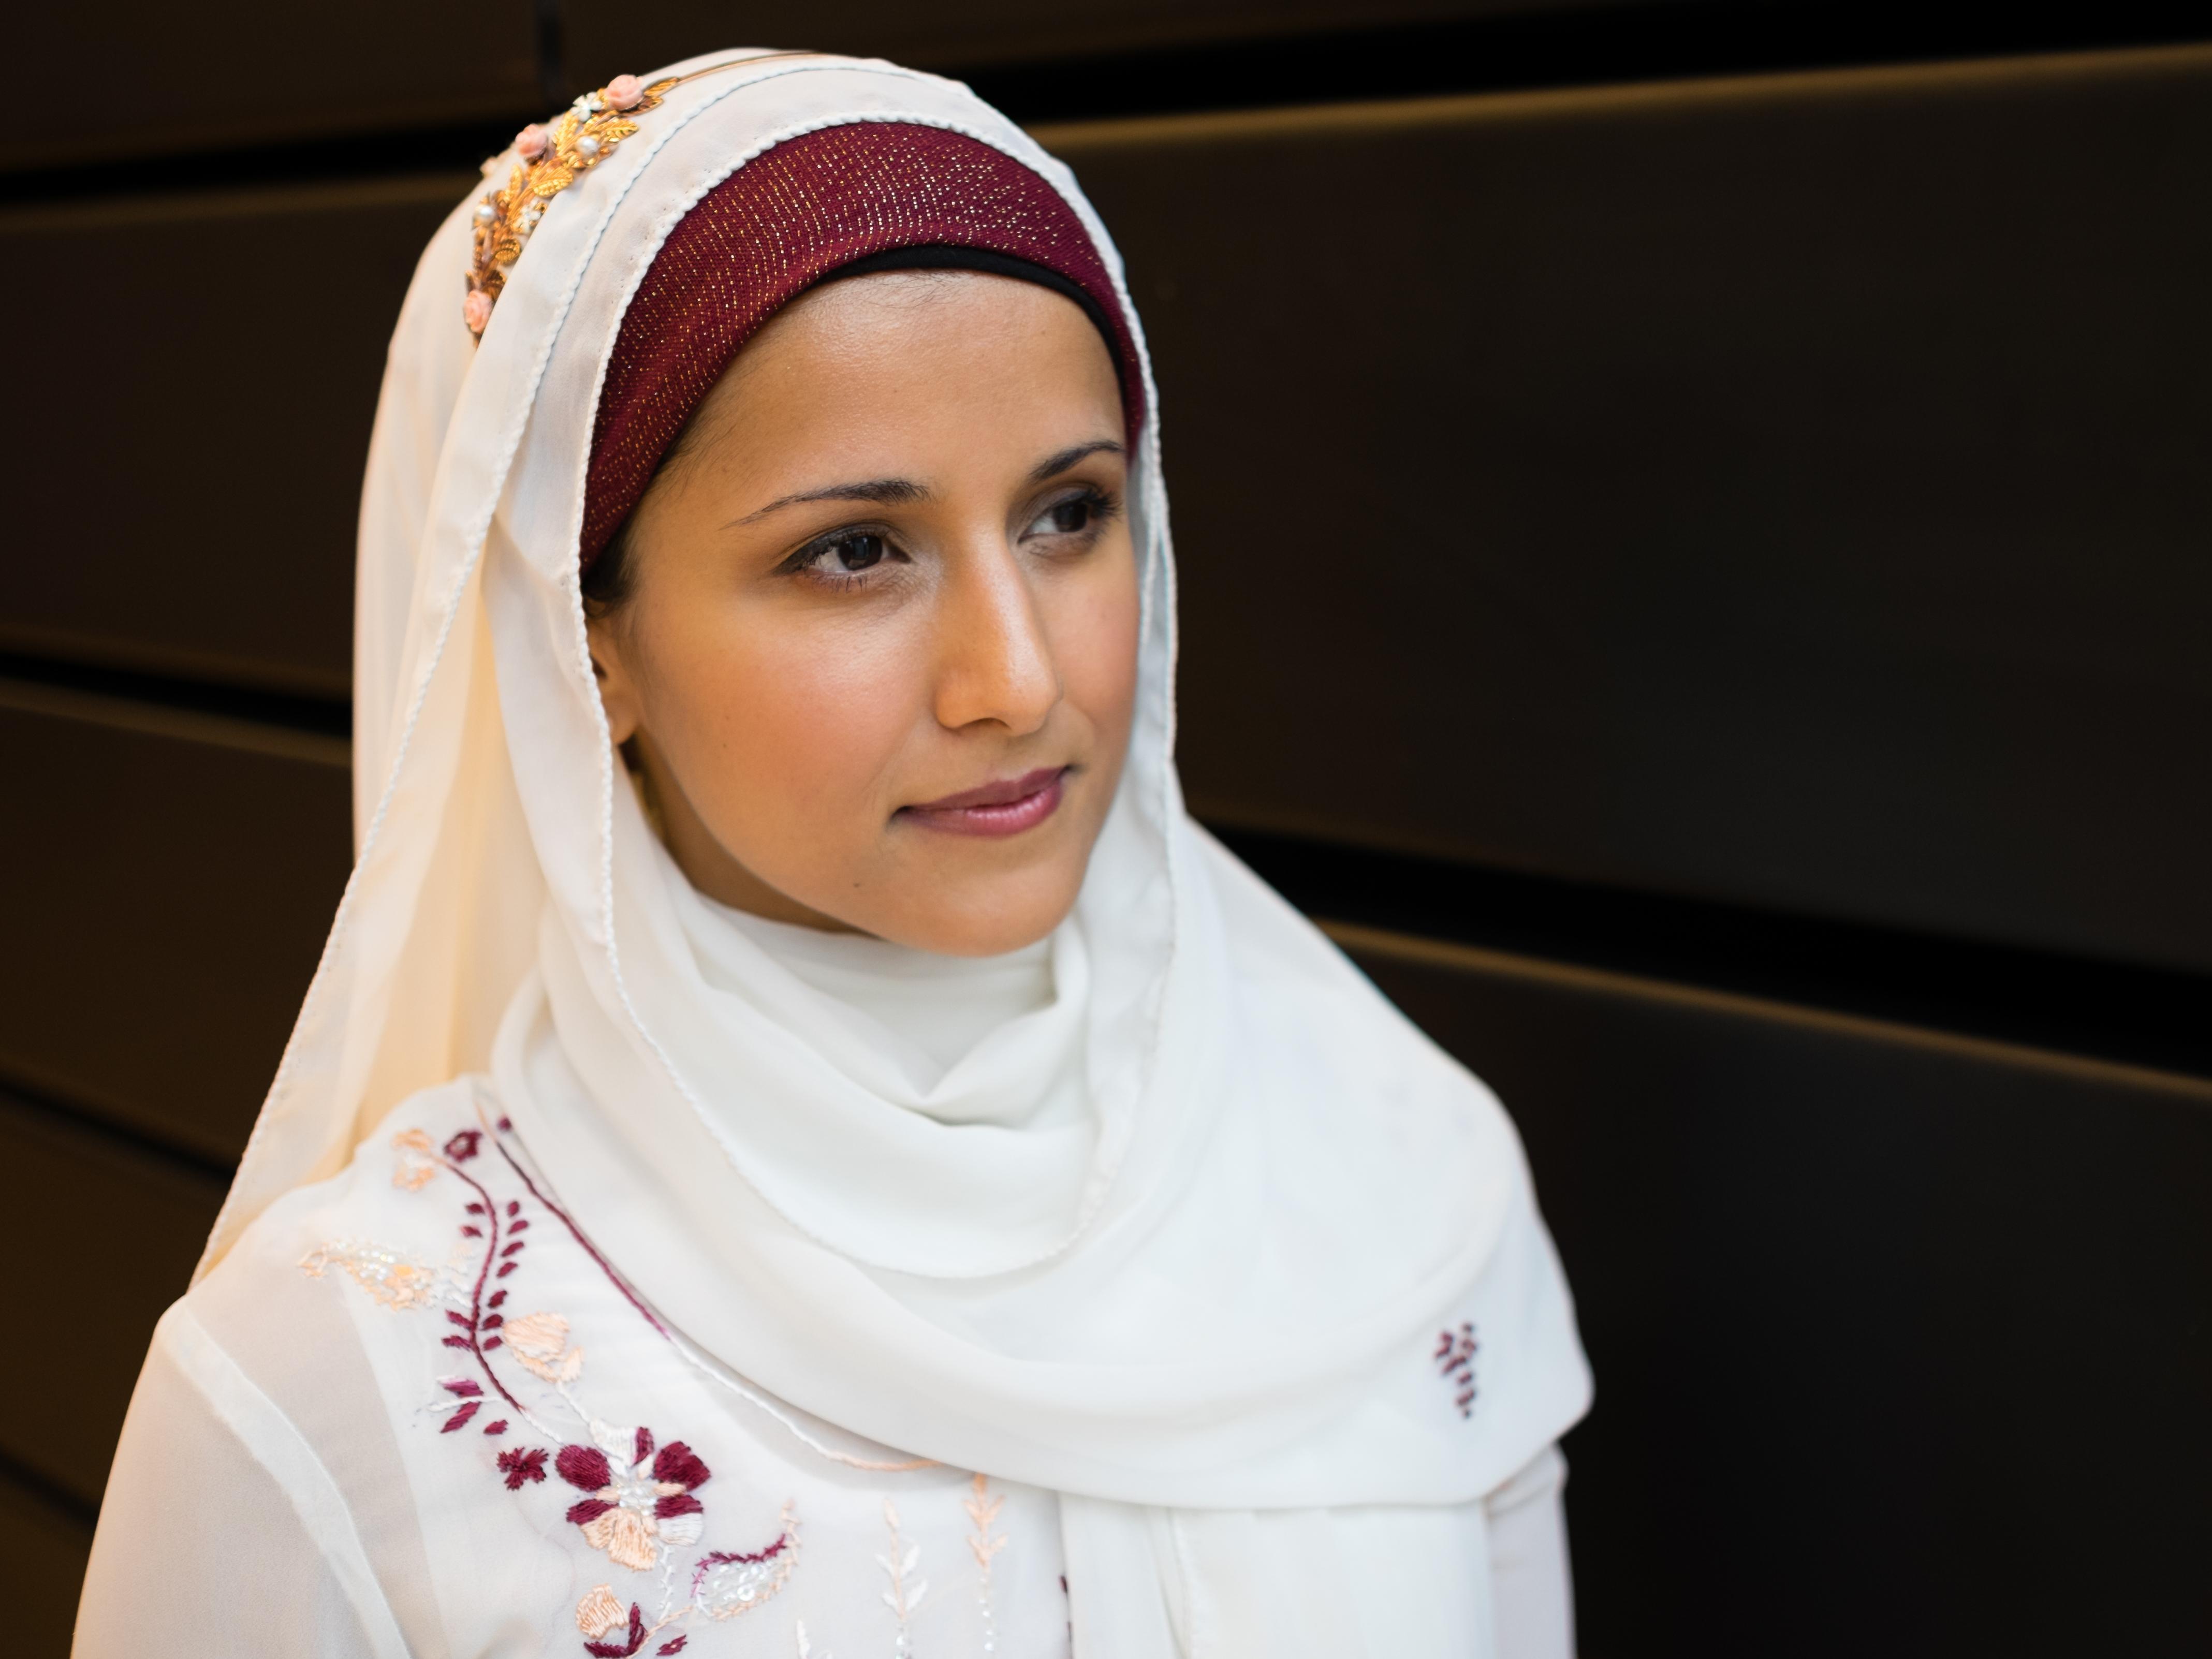 Assistant Professor Aisha Ahmad